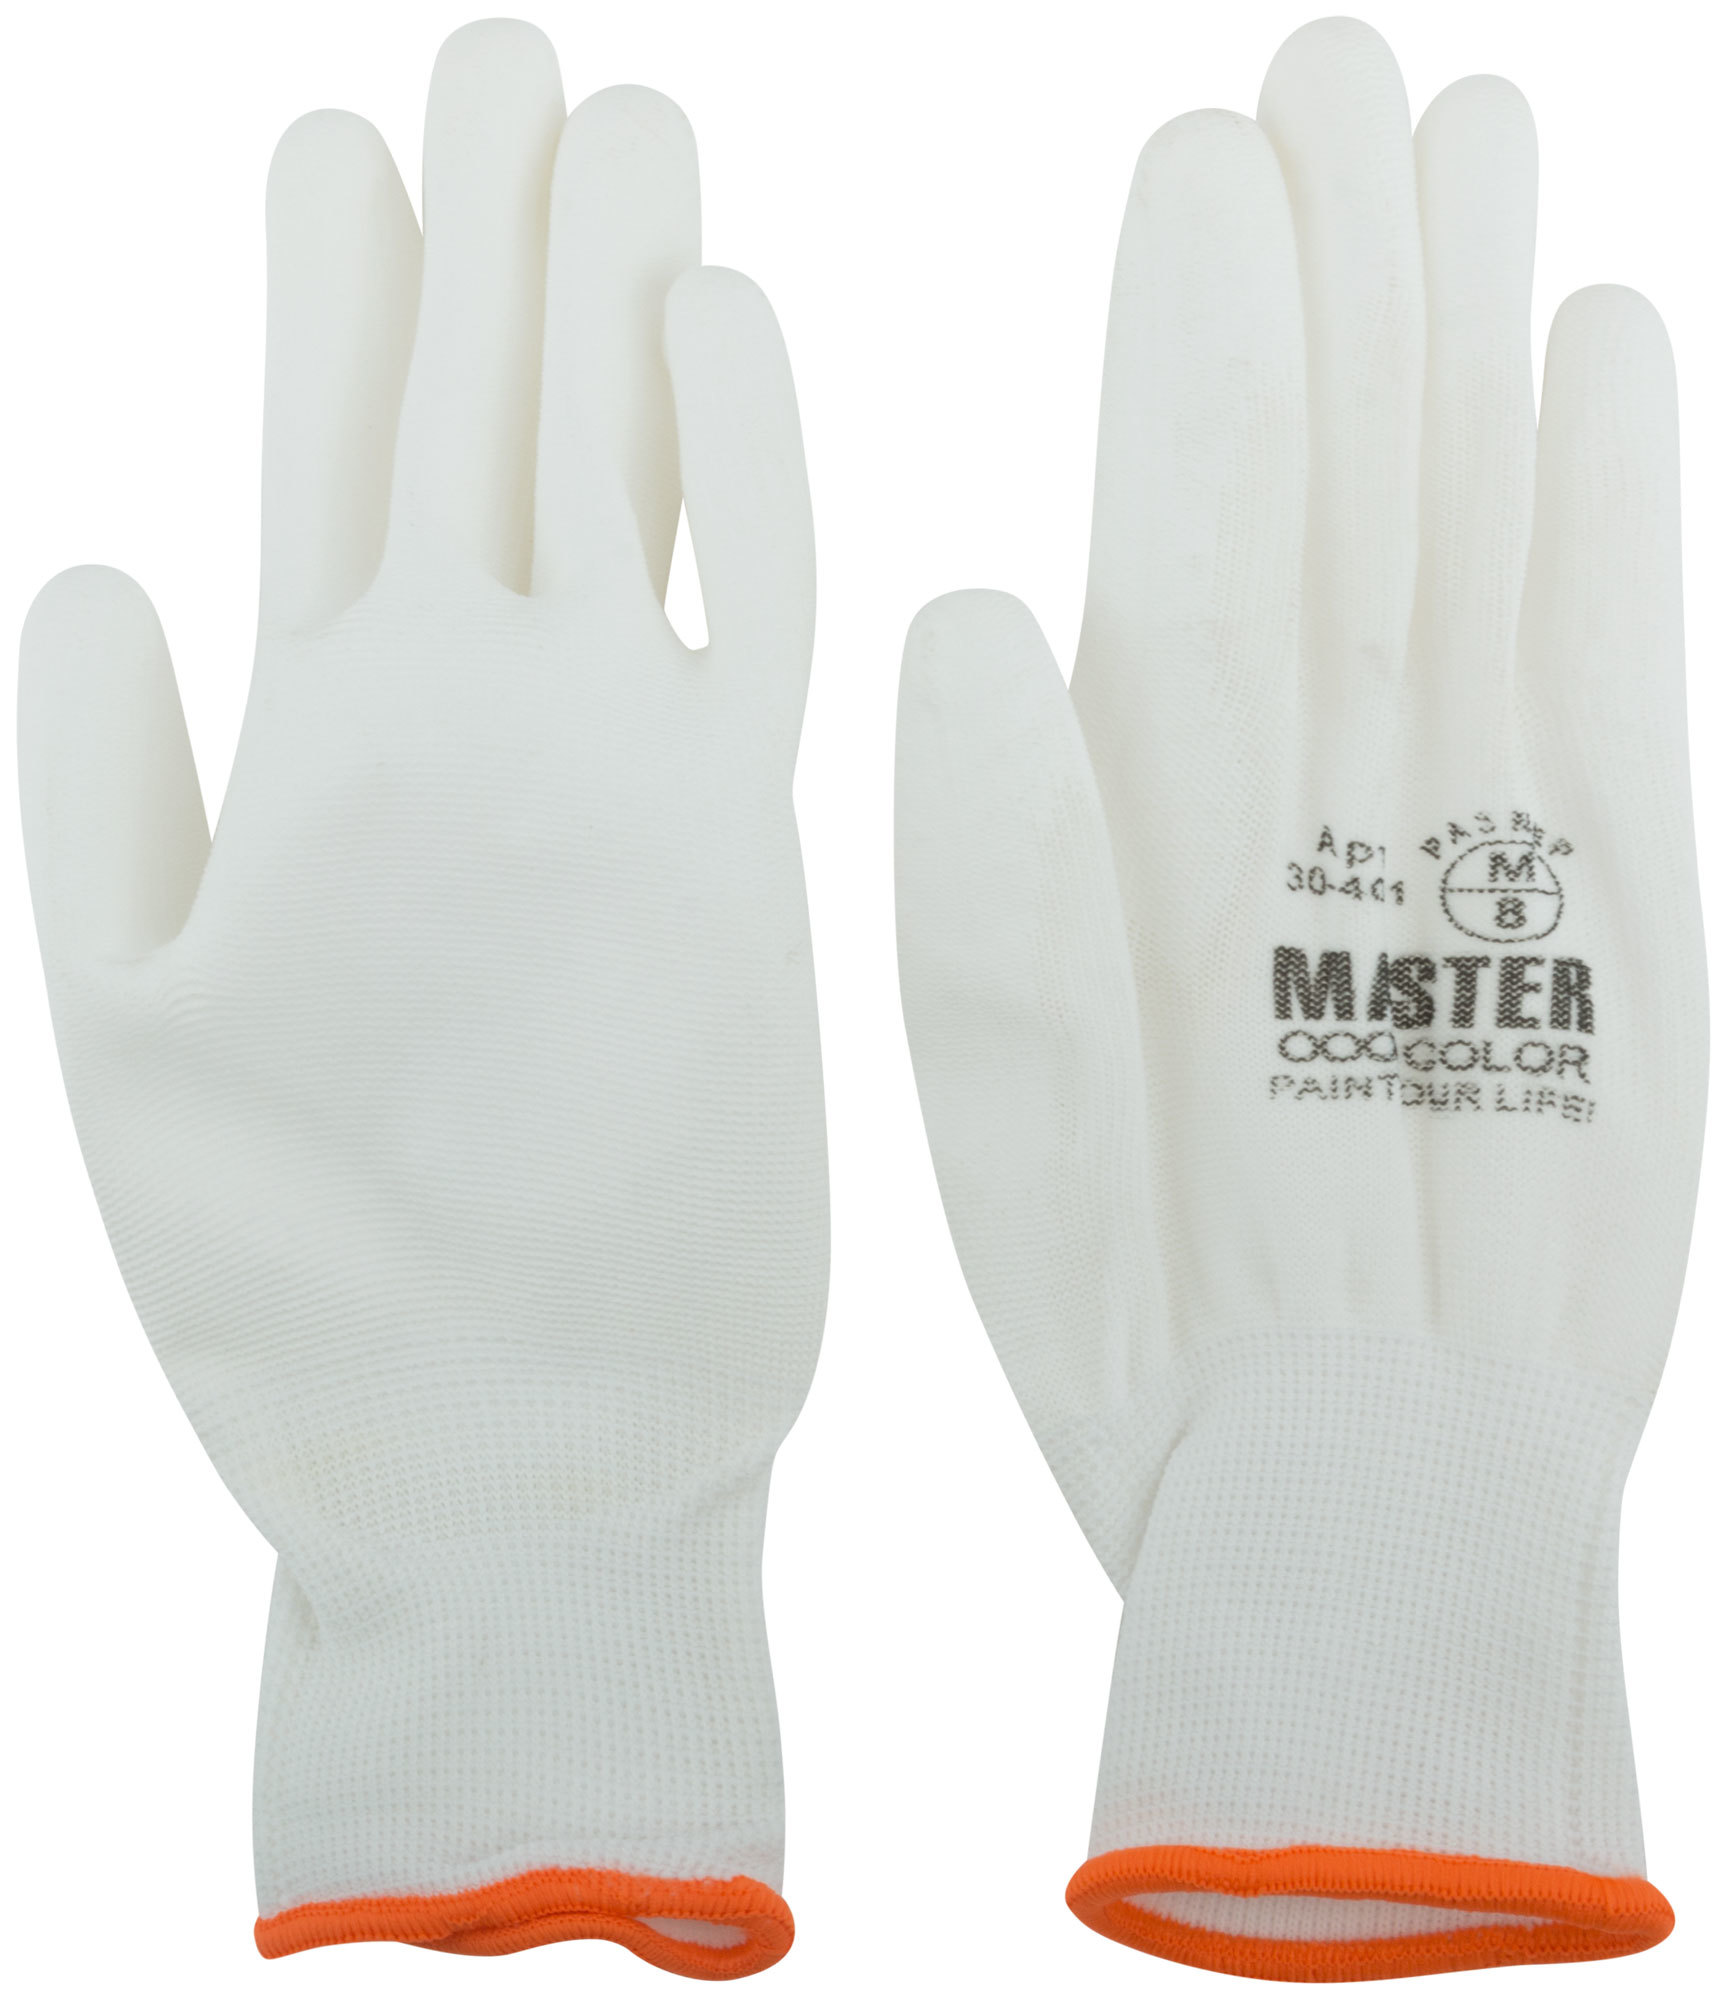 Перчатки белые, полиэстер с обливкой из полиуретана (водоотталкивающие), р-р L/9 (Изображение 1)